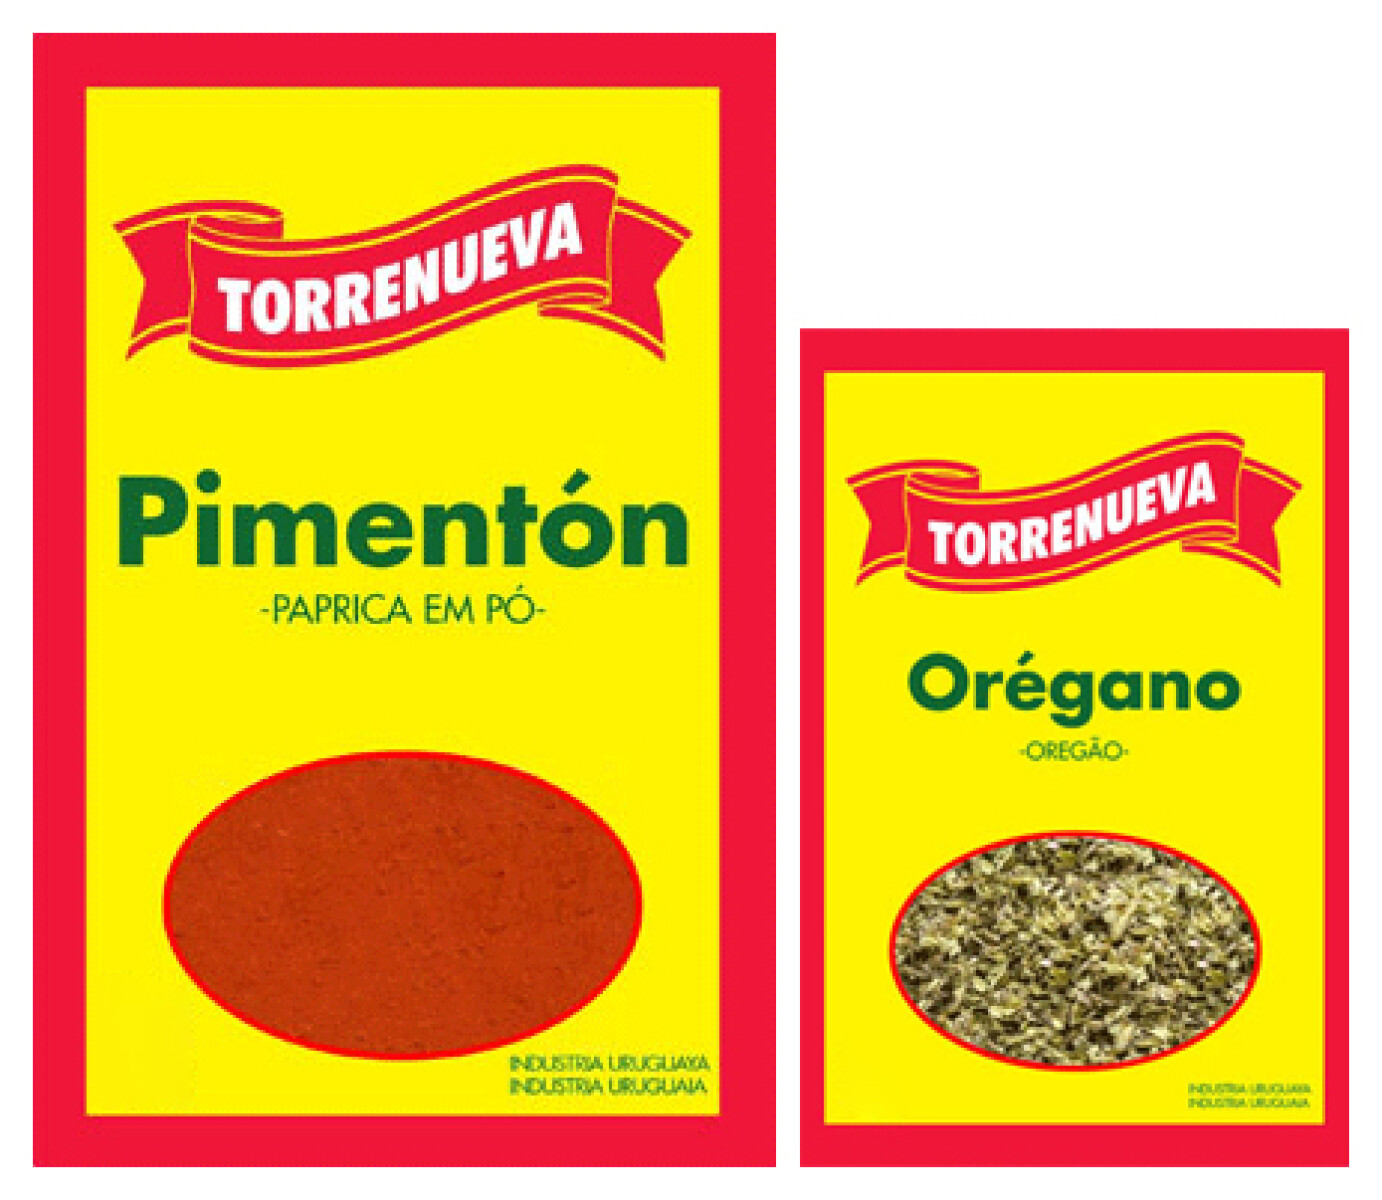 PIMENTON 250GR + OREGANO 100GR TORRENUEVA 